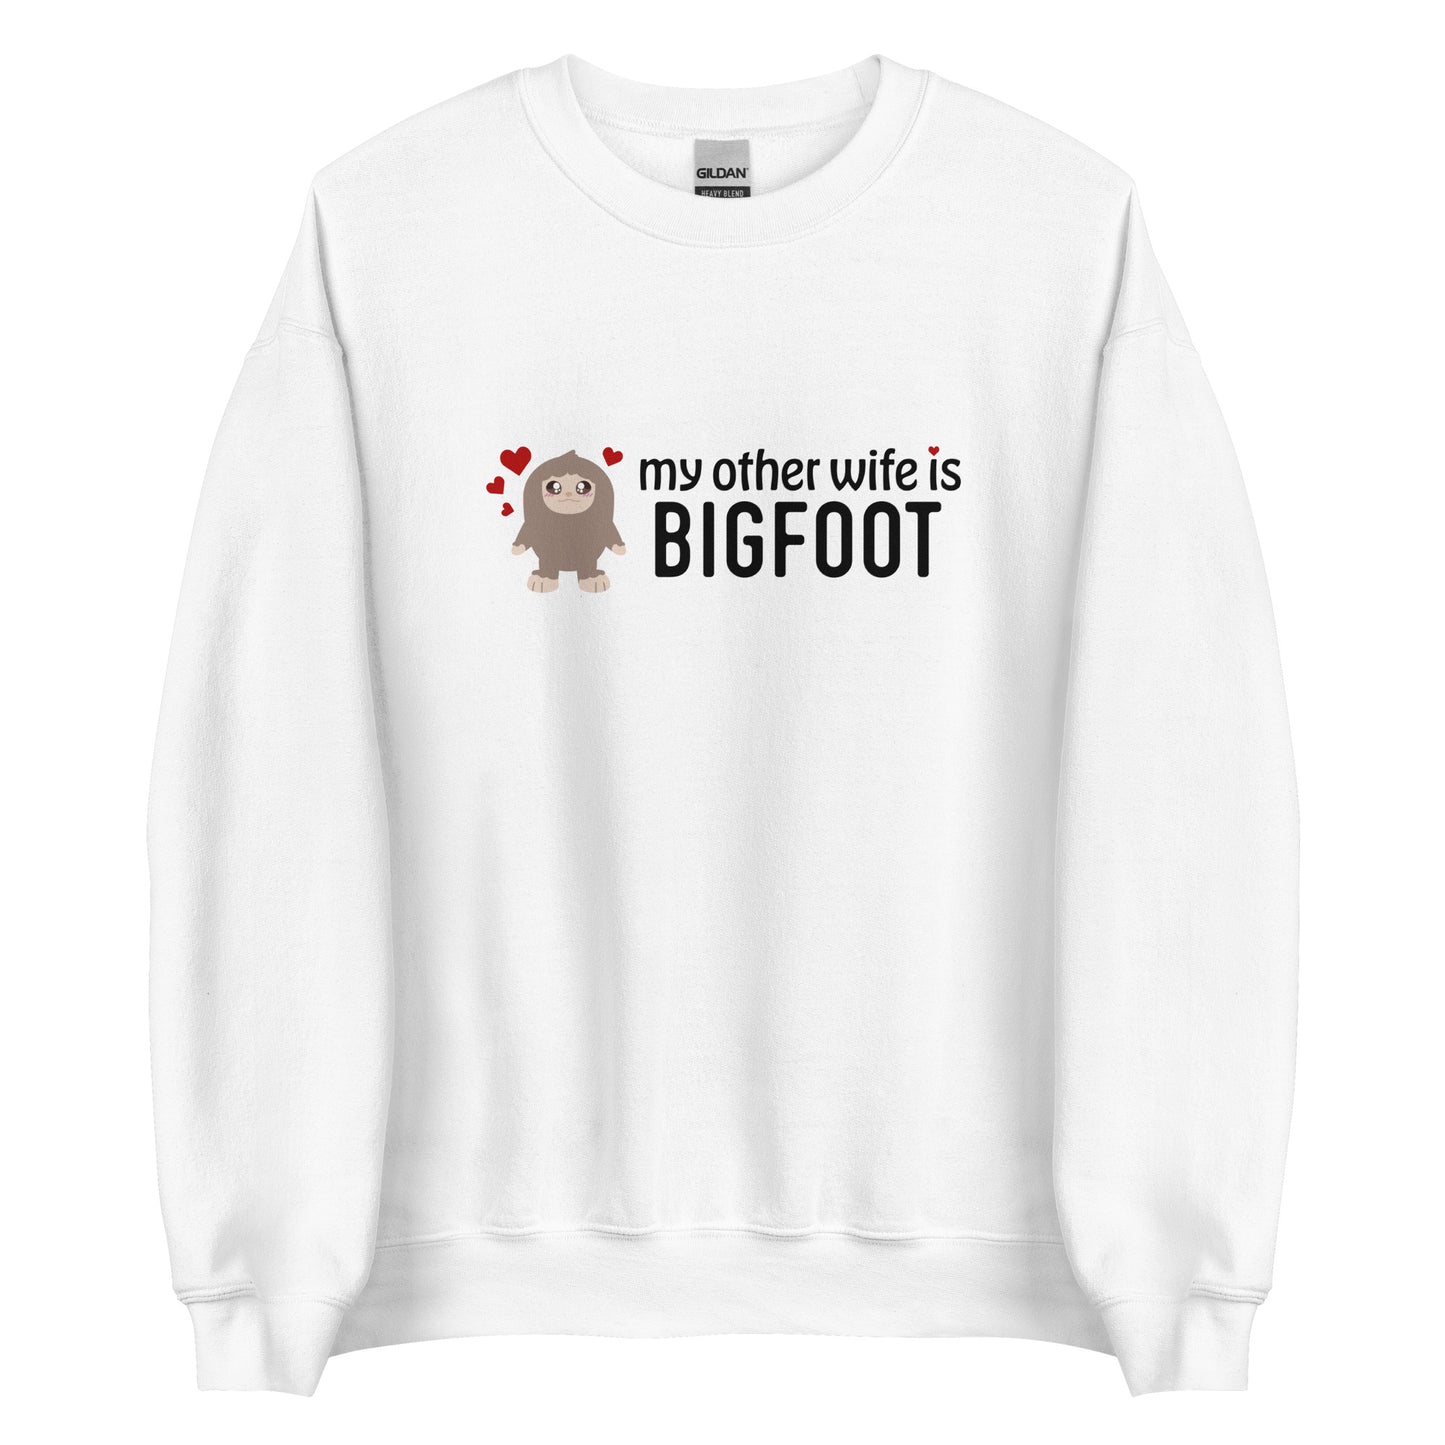 My Other _____ is Bigfoot Sweatshirt